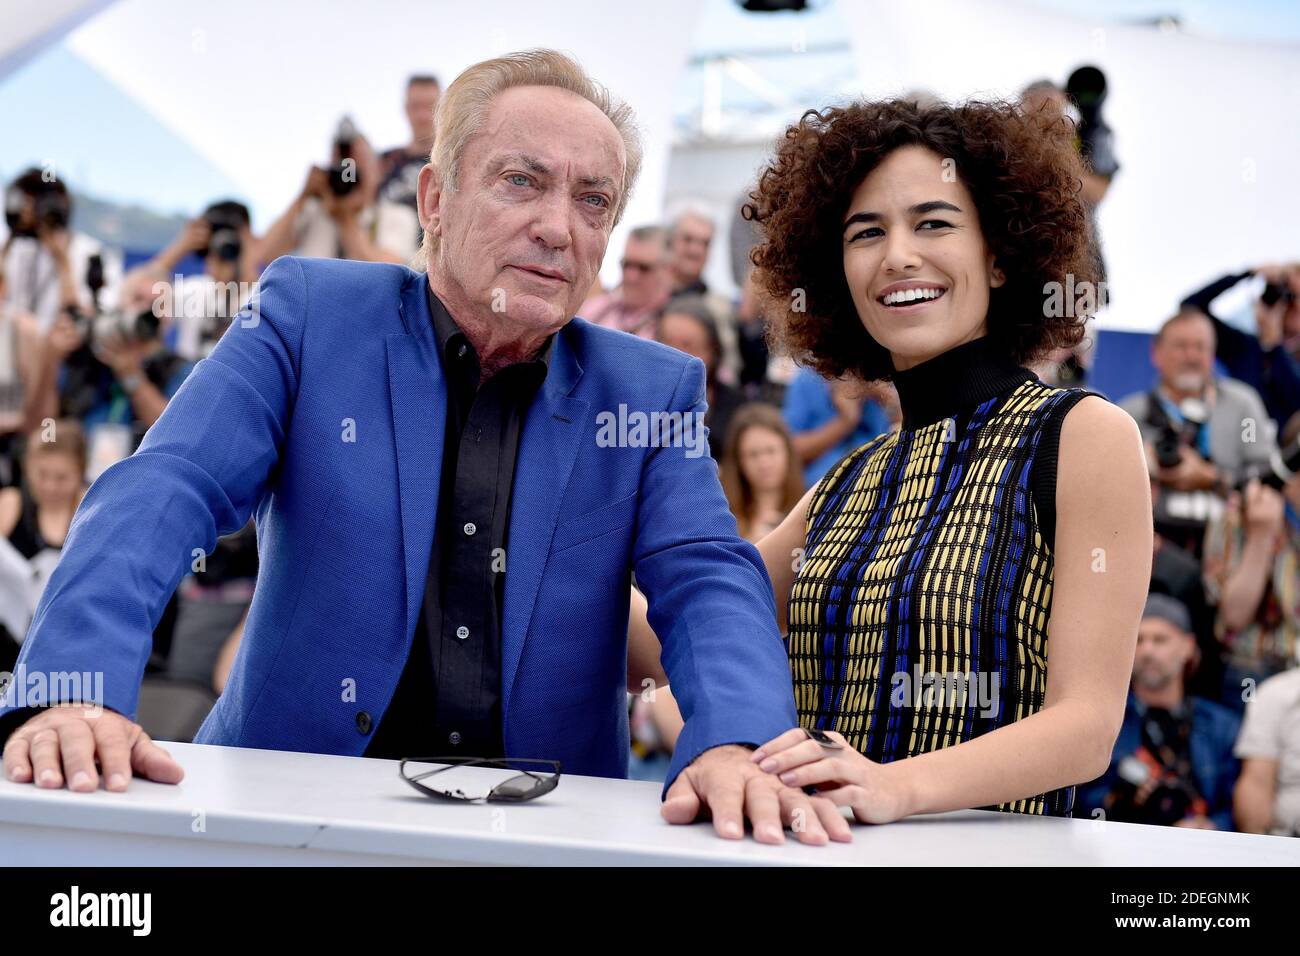 Barbara Colen e Udo Kier partecipano alla fotocellula per 'Bacurau' durante il 72o Festival annuale del Cinema di Cannes il 16 maggio 2019 a Cannes, Francia. Foto di Lionel Hahn/ABACAPRESS.COM Foto Stock